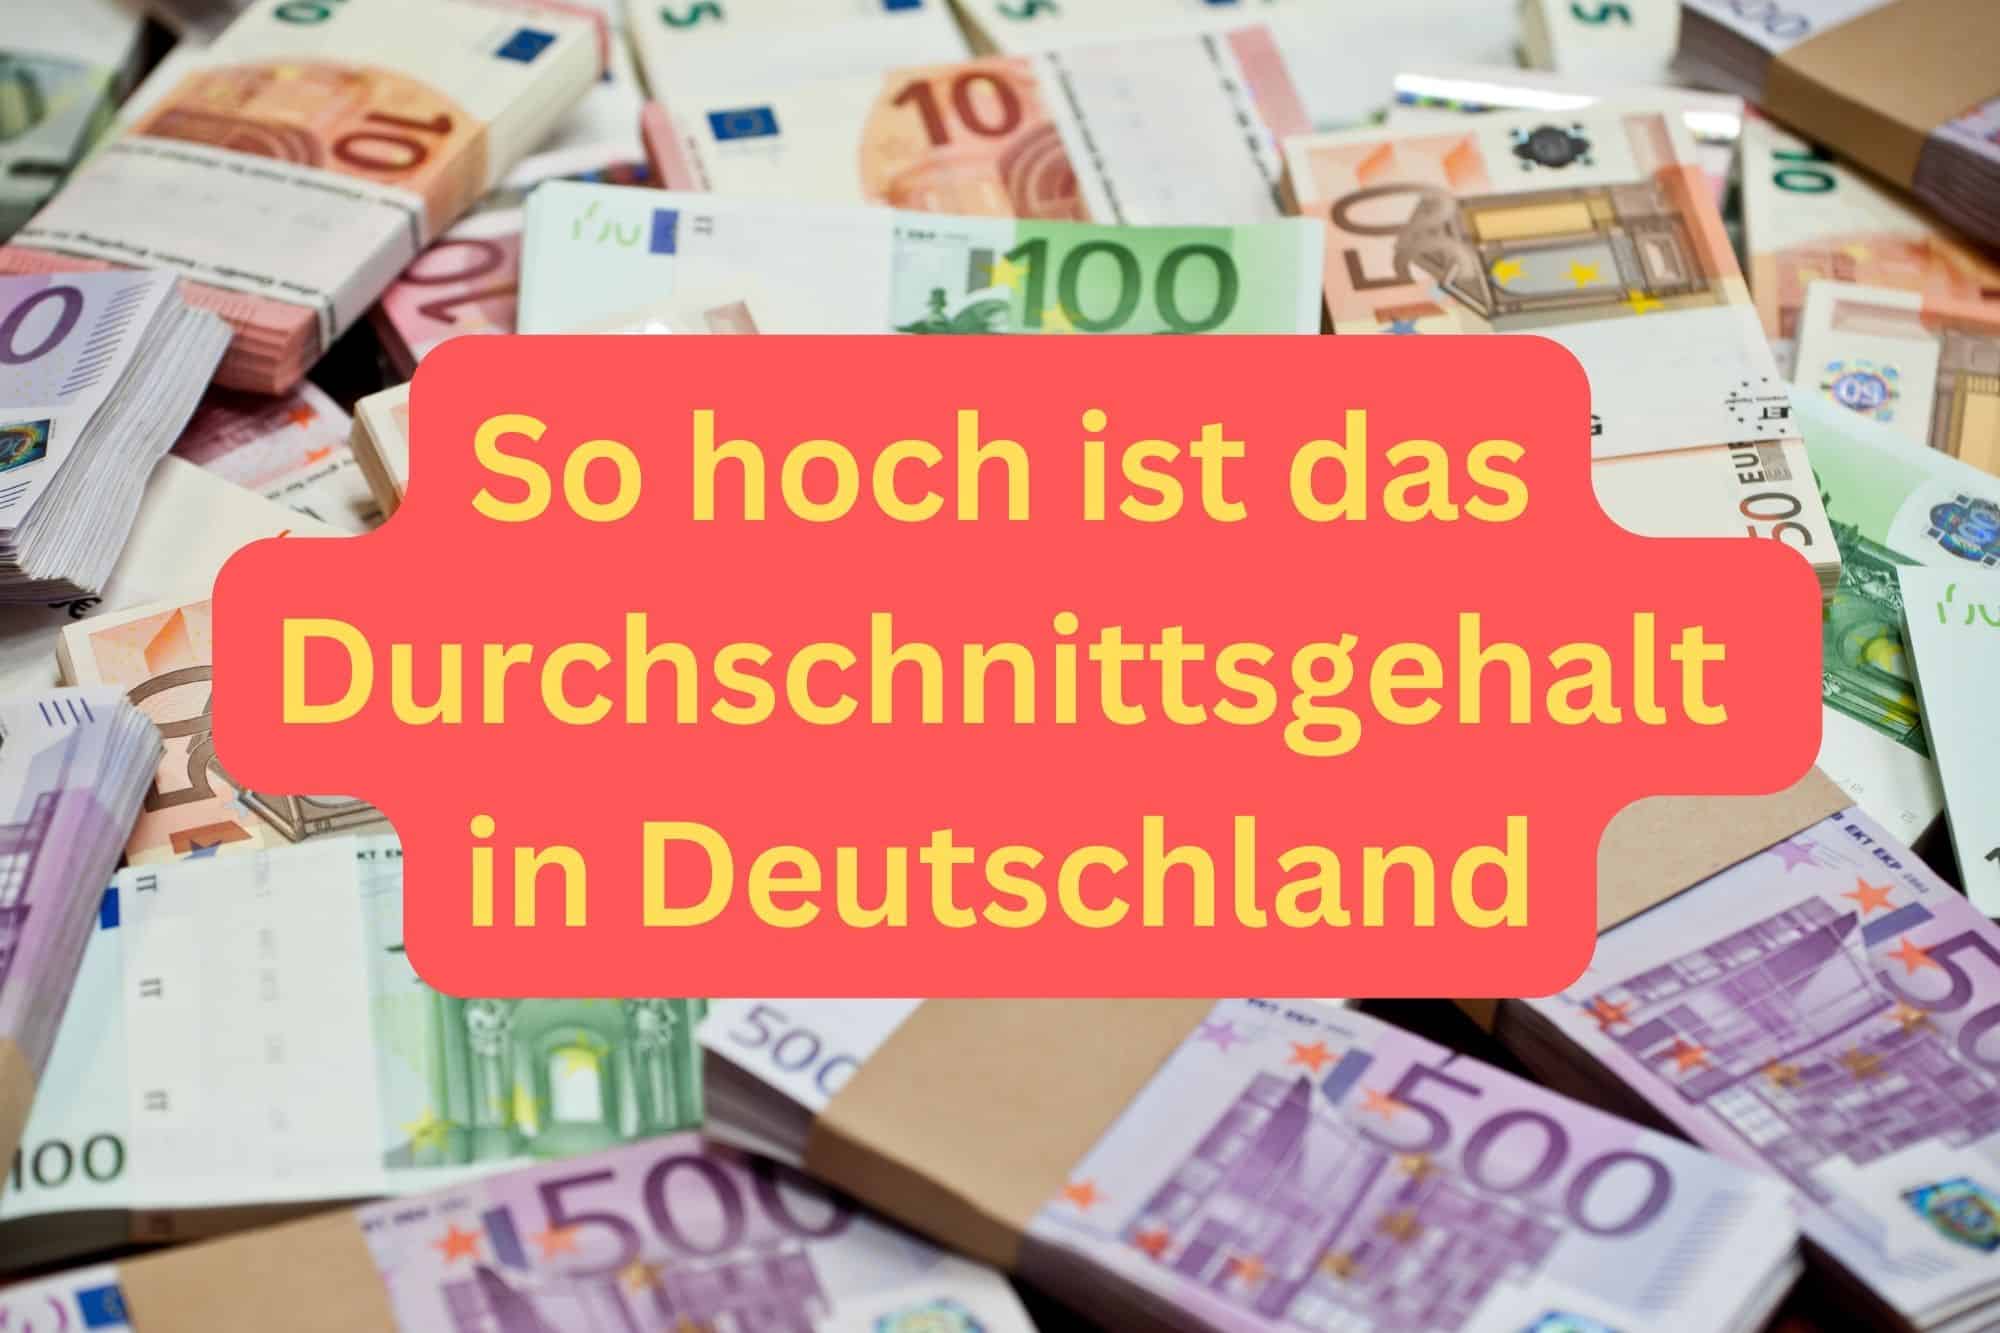 So hoch ist das Durchschnittsgehalt in Deutschland.